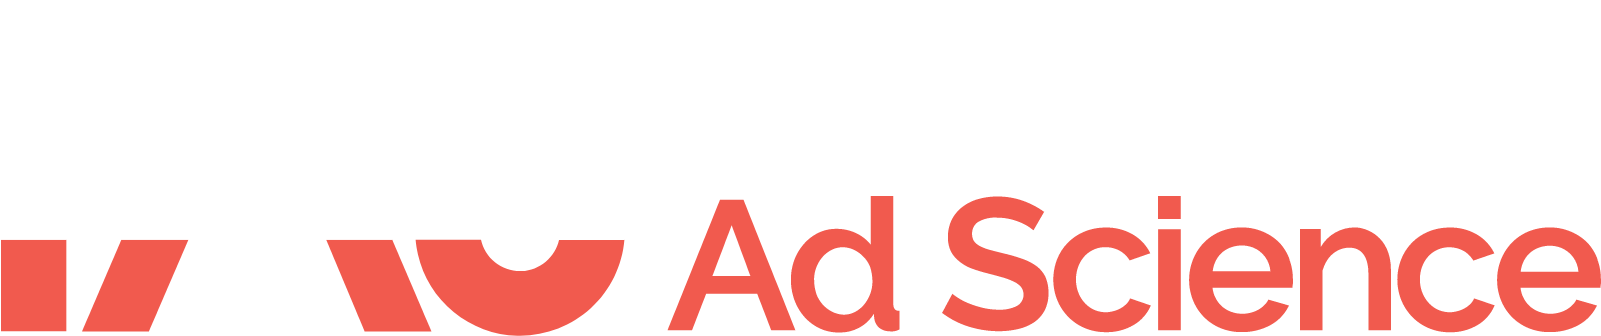 Integral Ad Science logo large for dark backgrounds (transparent PNG)